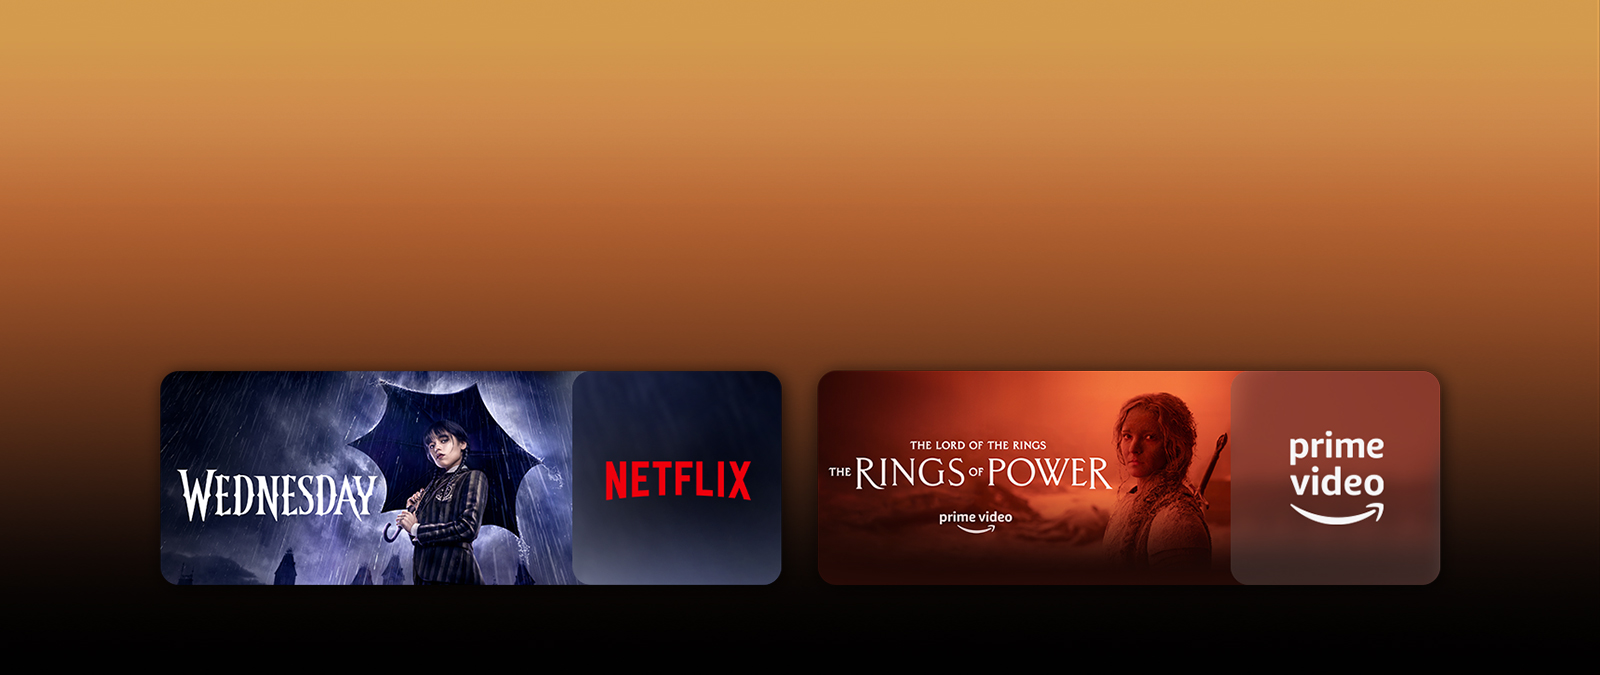 Показаны логотипы стриминговых сервисов с их фильмами справа от каждого логотипа. Показаны изображения «Уэнсдей» от Netflix и «Кольца власти» от PRIME VIDEO.